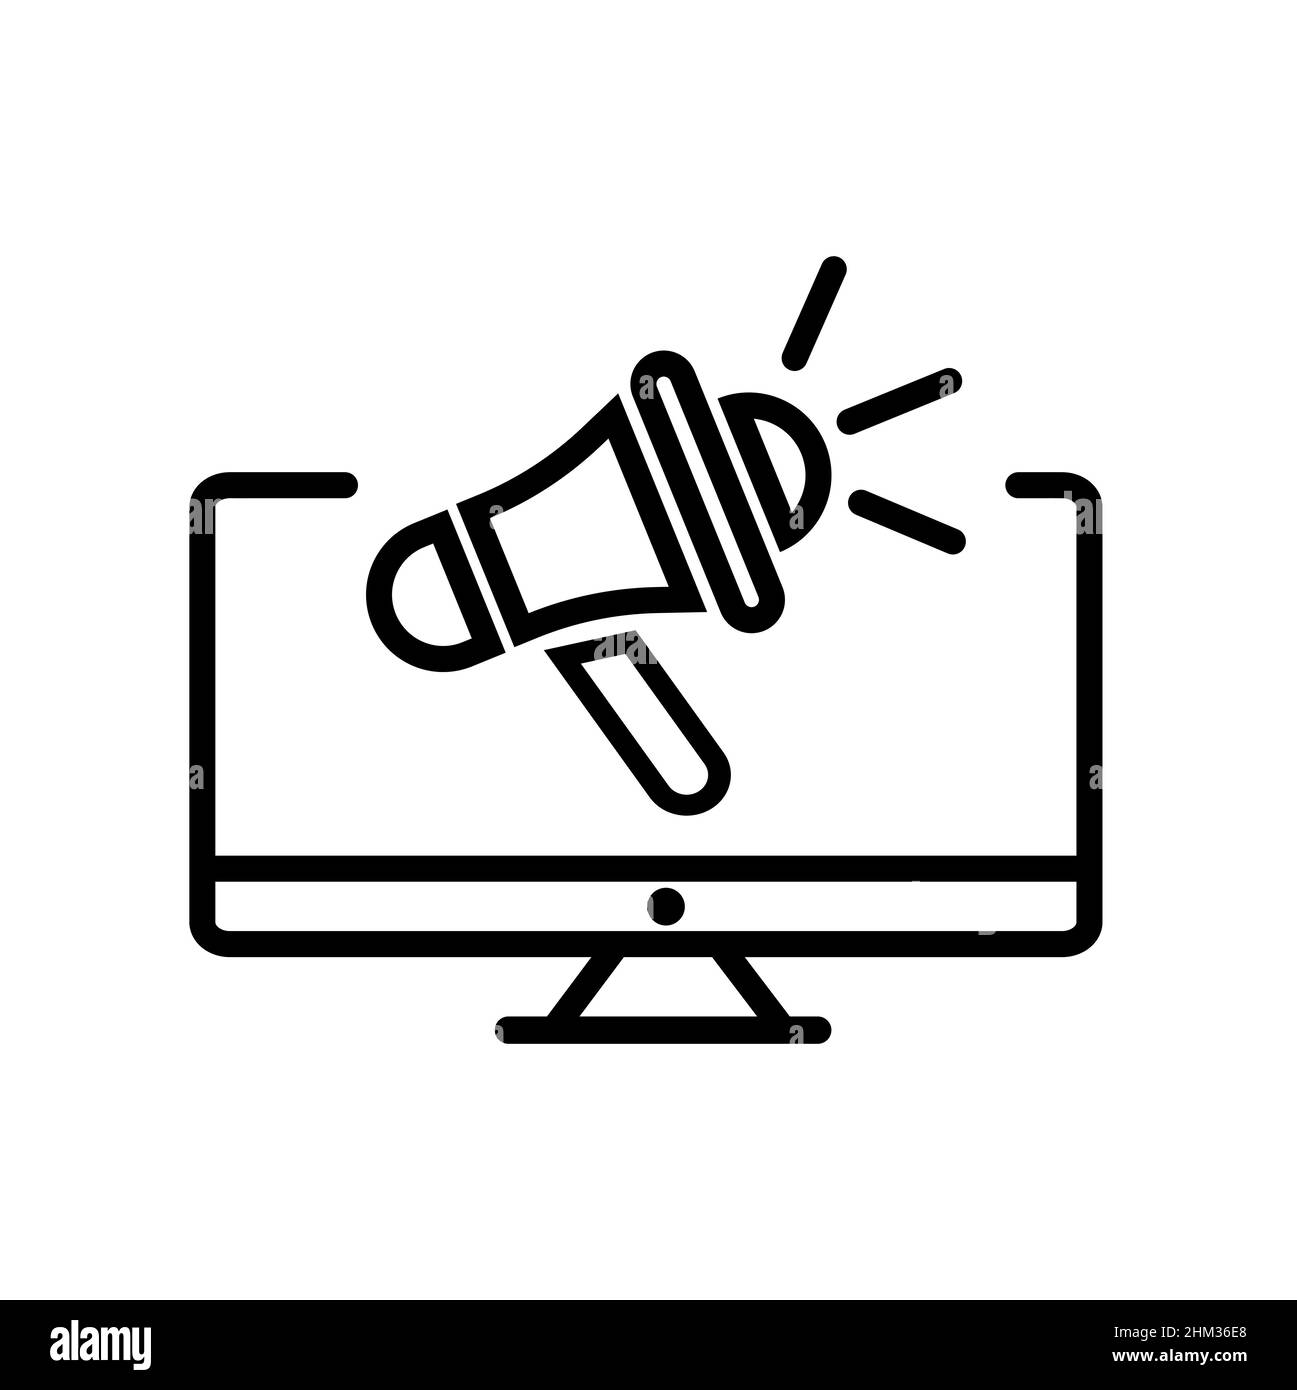 Icona vettoriale astratta su bianco, illustrazioni isolate per grafica e web design. Illustrazione perfetta del pittogramma nero su sfondo bianco. Illustrazione Vettoriale